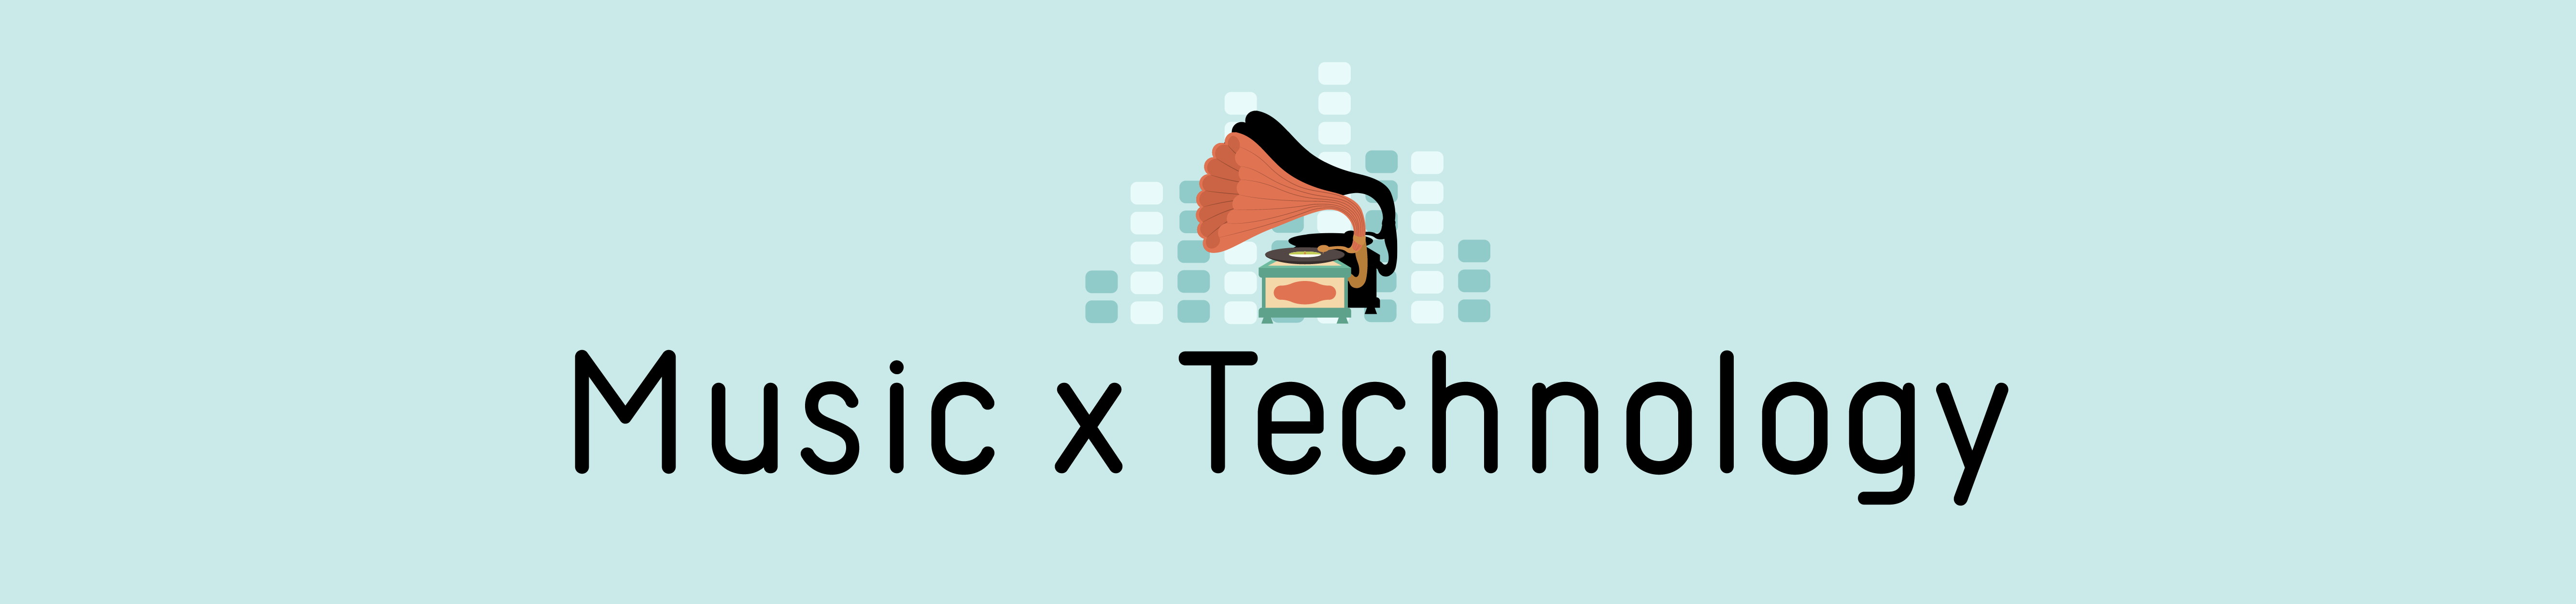 Music X Technology header